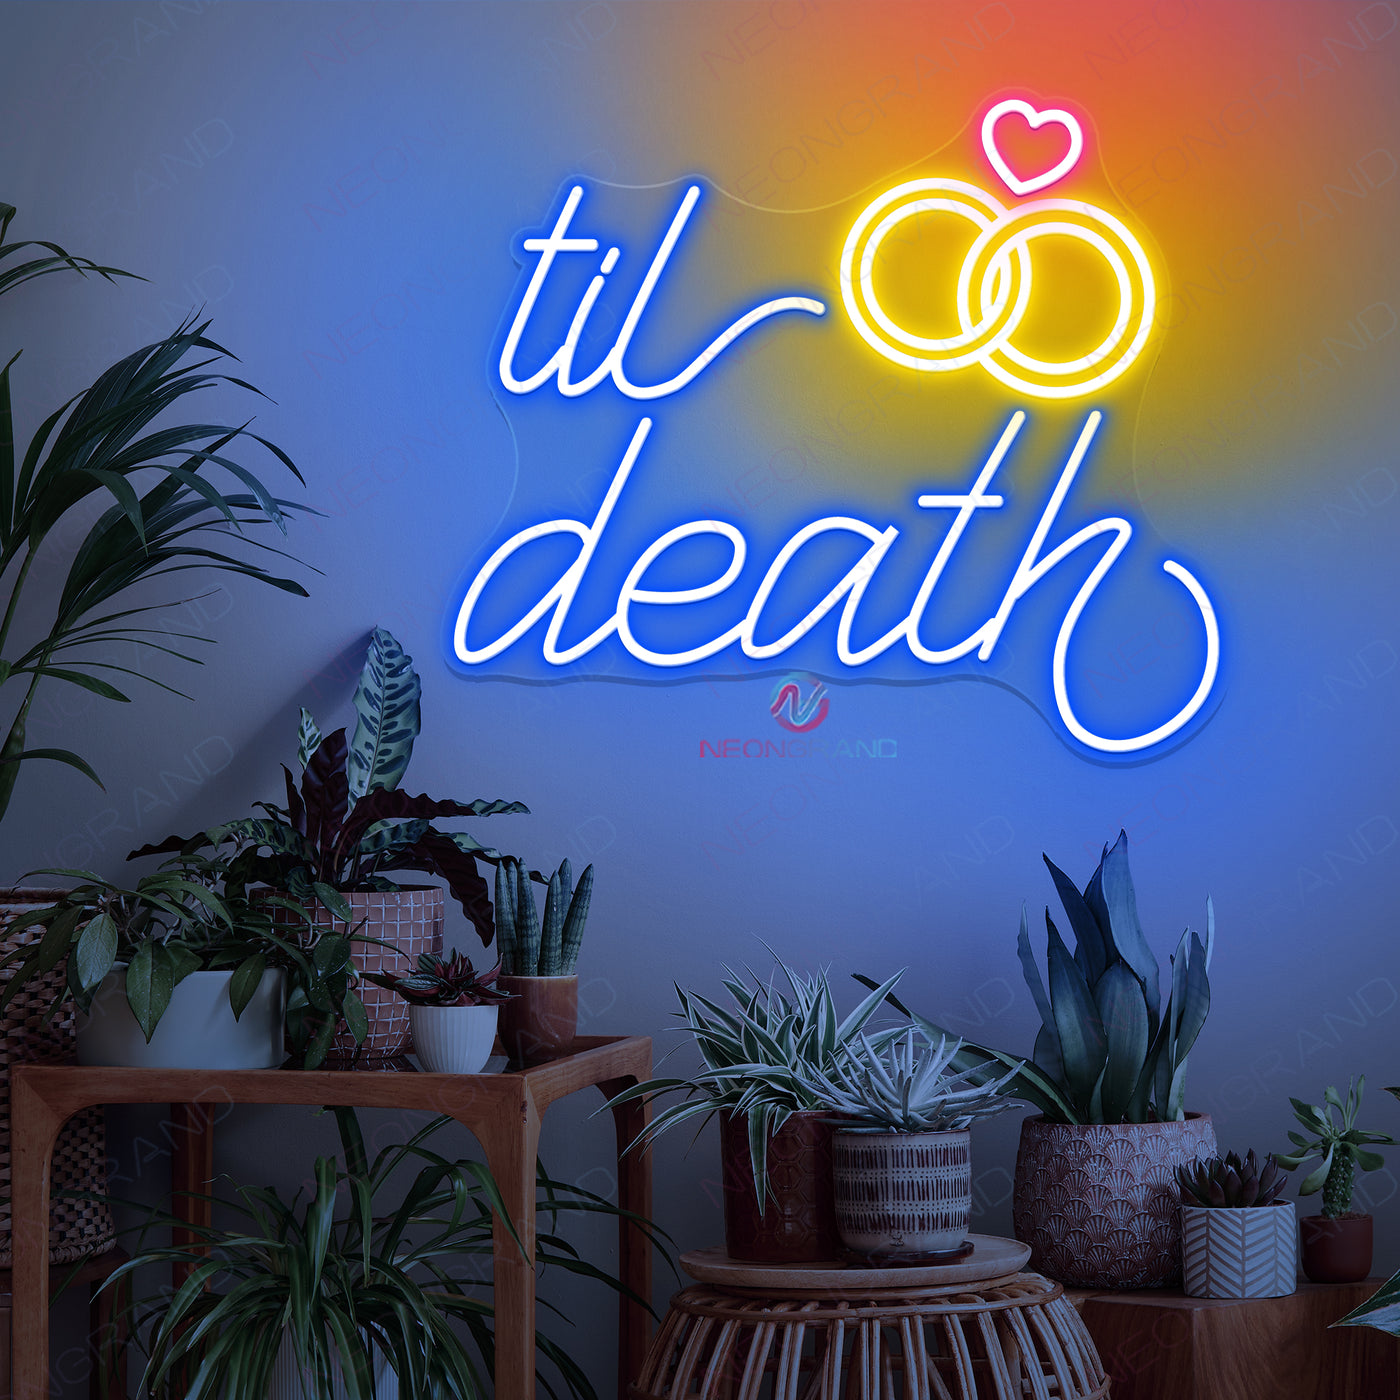 Til Death Neon Sign Wedding Led Light